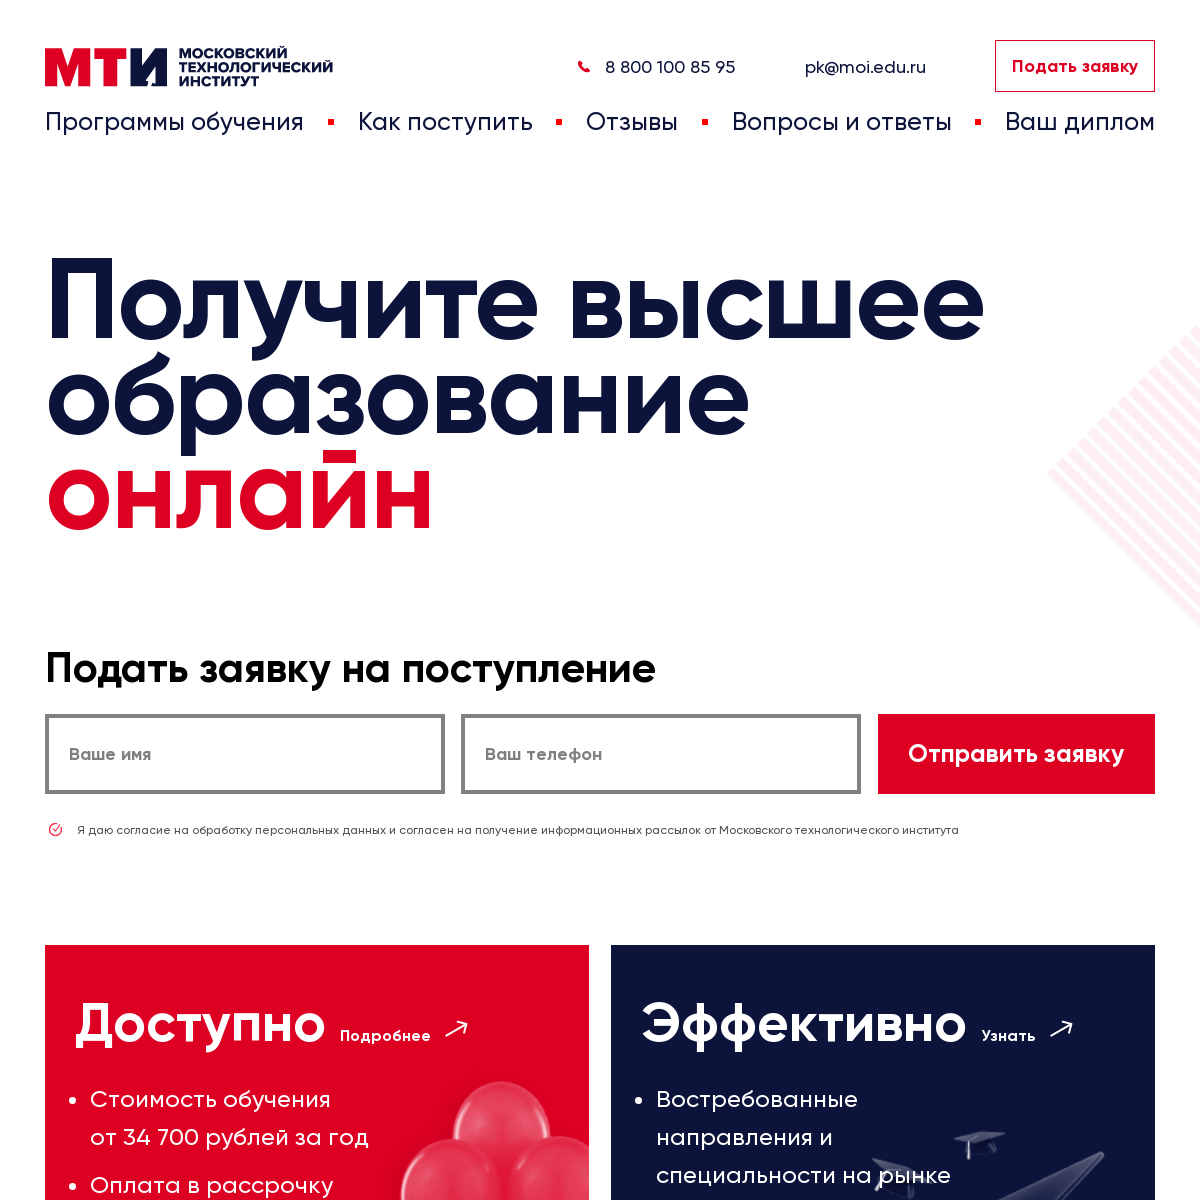 A complete backup of mti.edu.ru